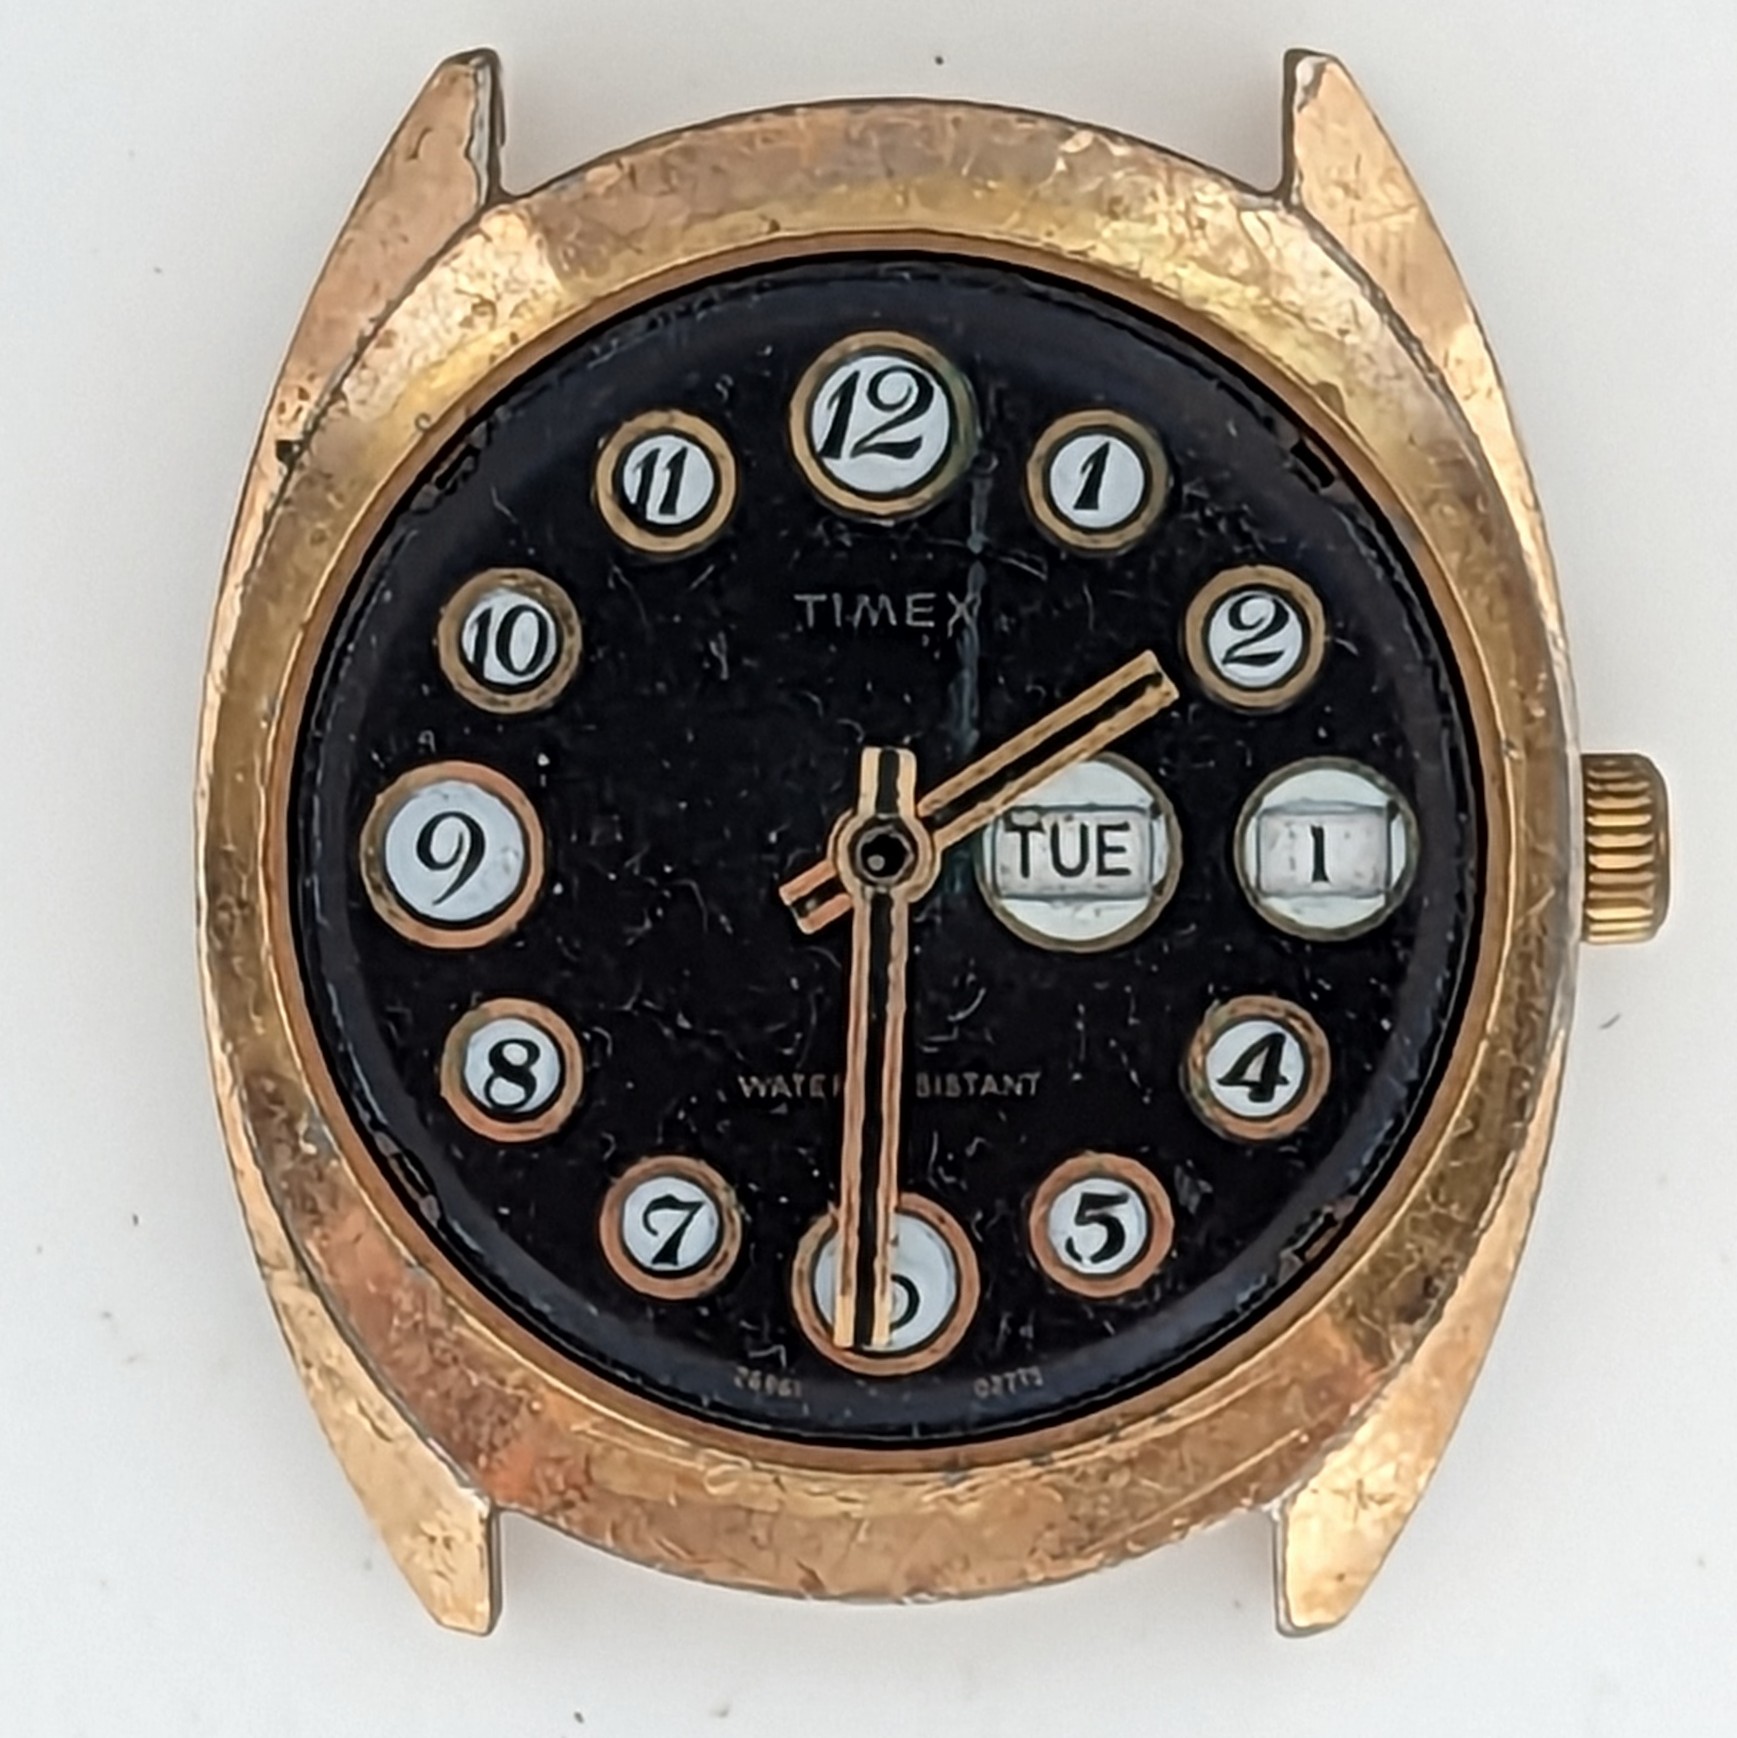 Timex Marlin 26961 02775 [1975]